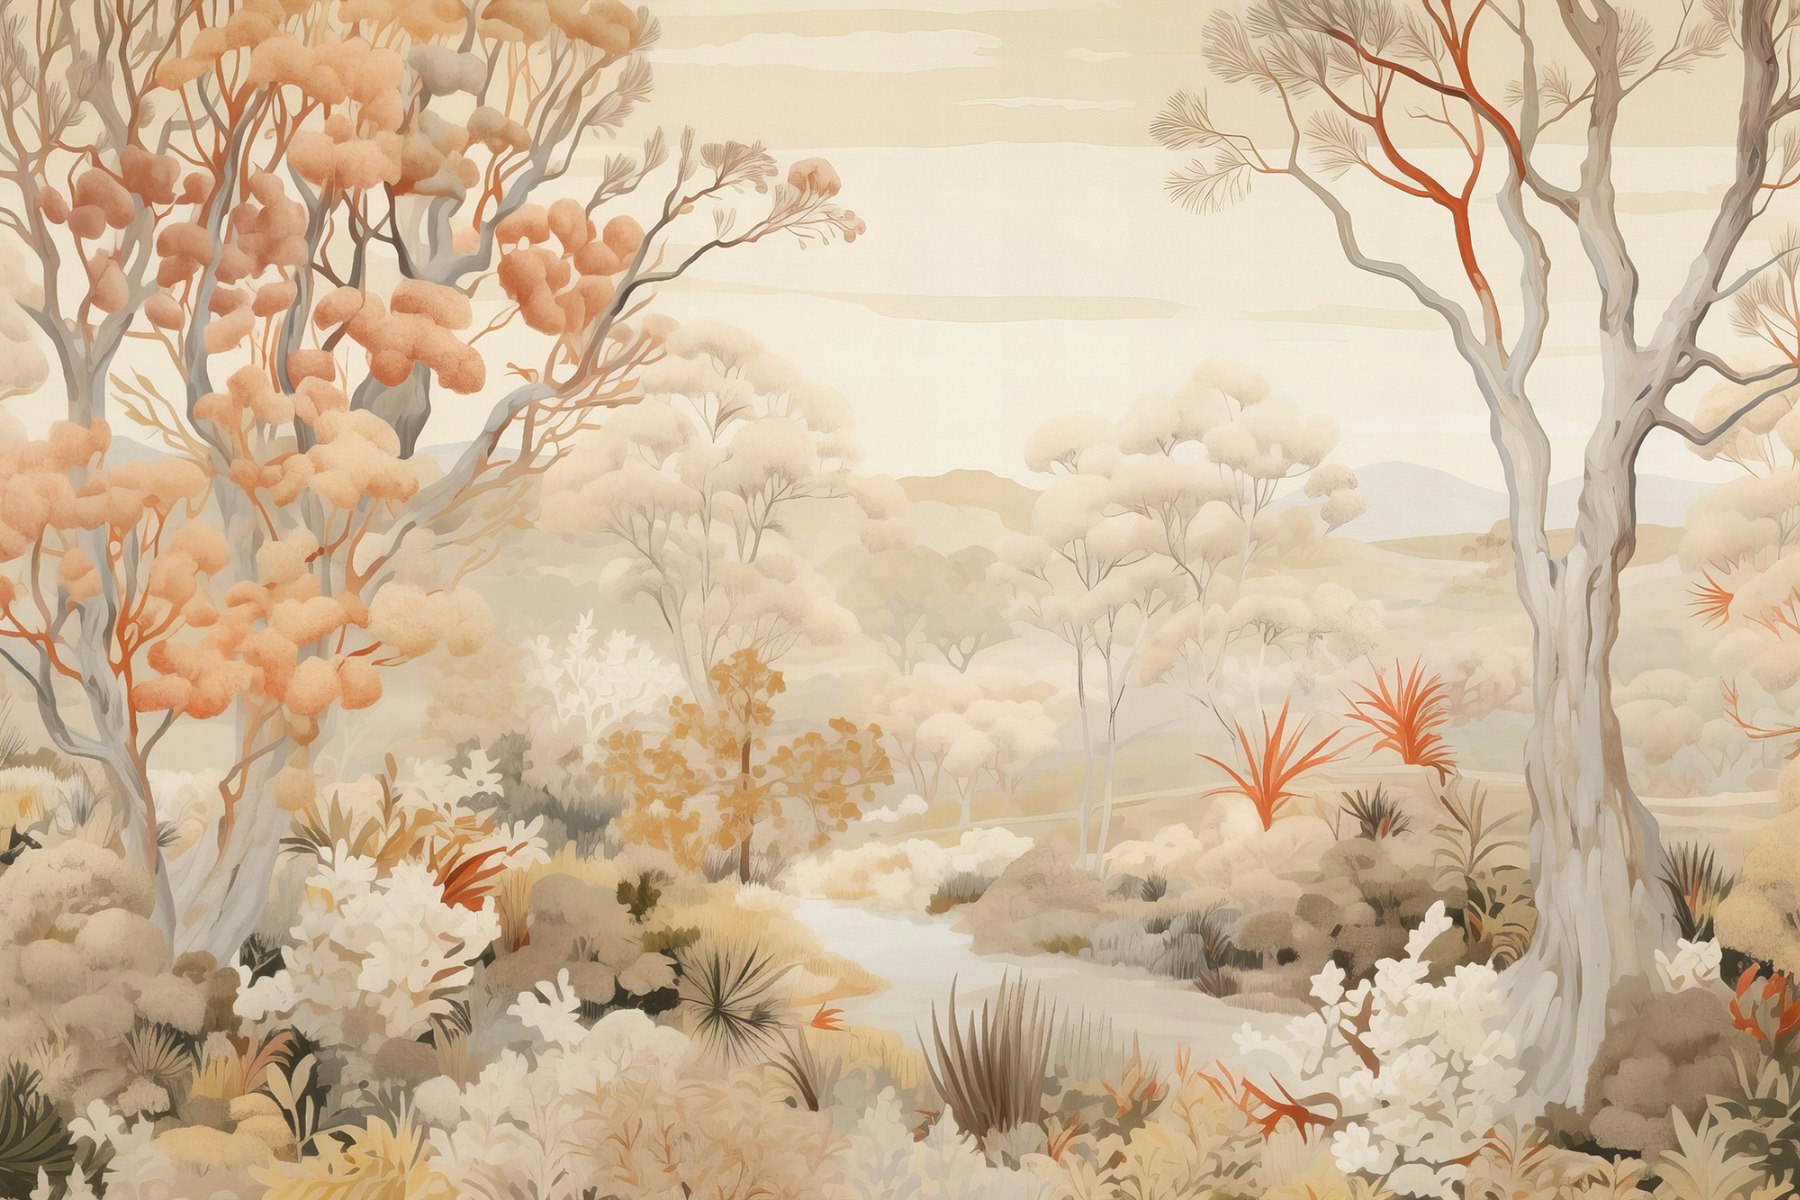 dtil29 beautiful autumn forest wallpaper murals